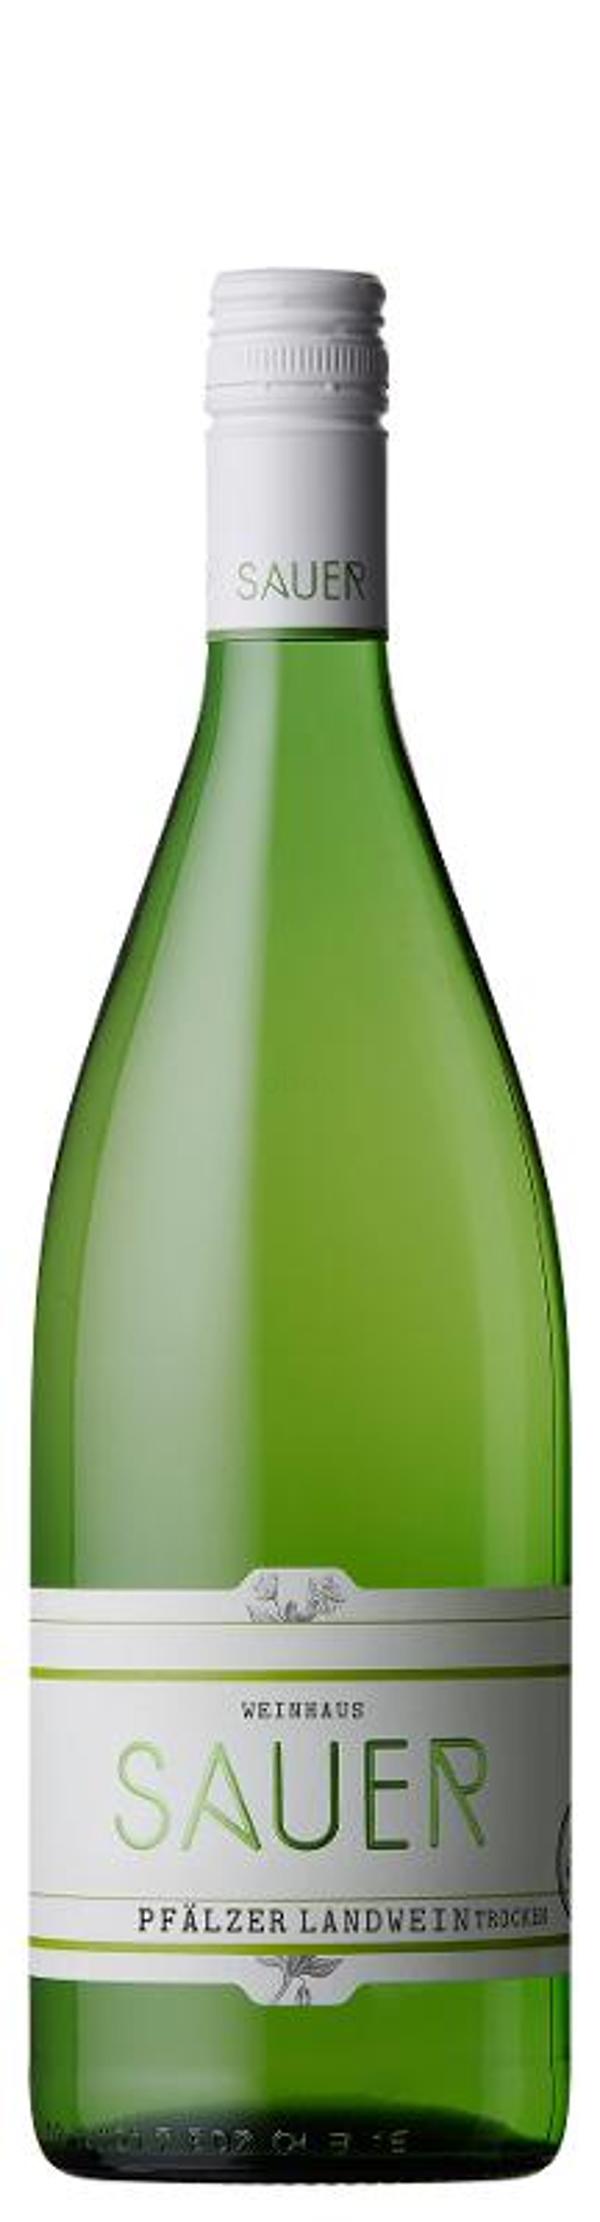 Produktfoto zu Pfälzer Landwein weiß trocken, 1 l